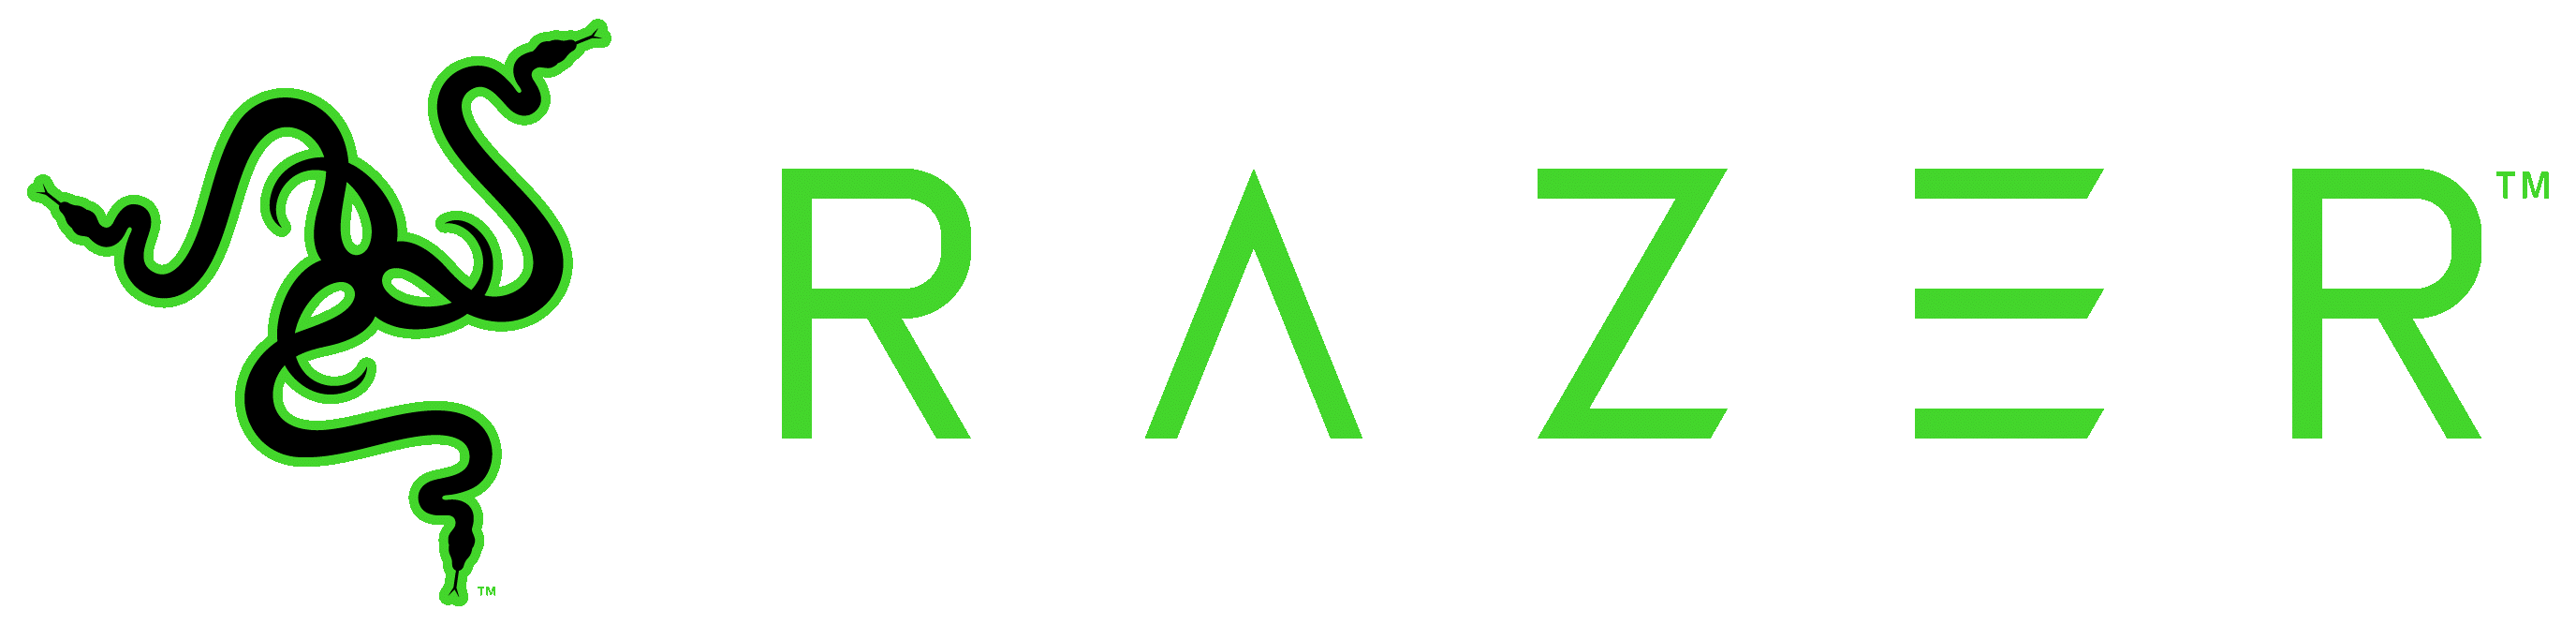 The Razer logo.